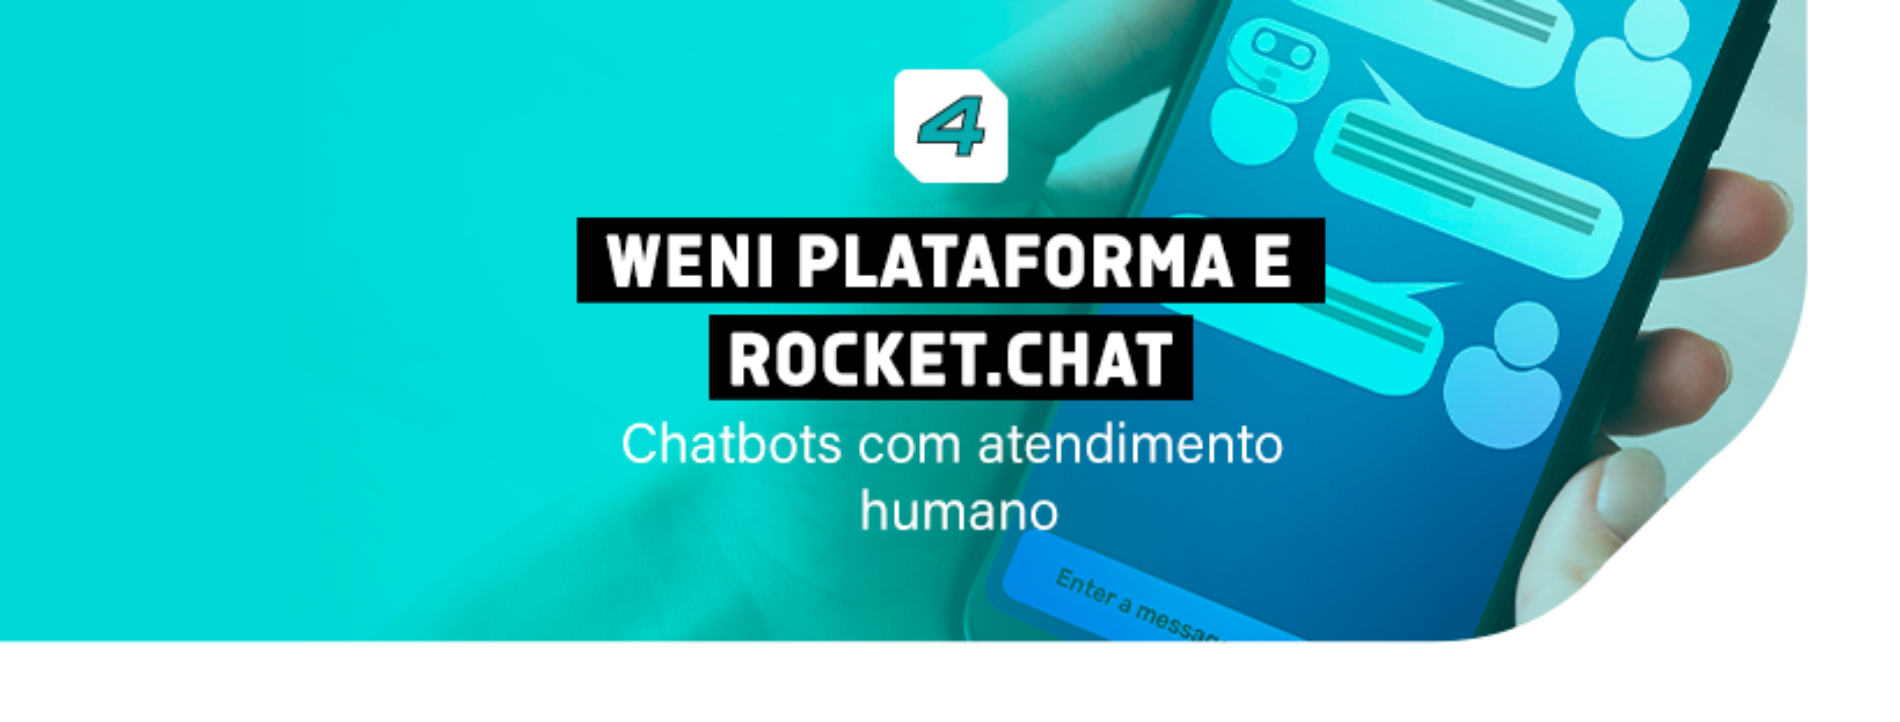 Automatização de atendimento com o chatbot Weni